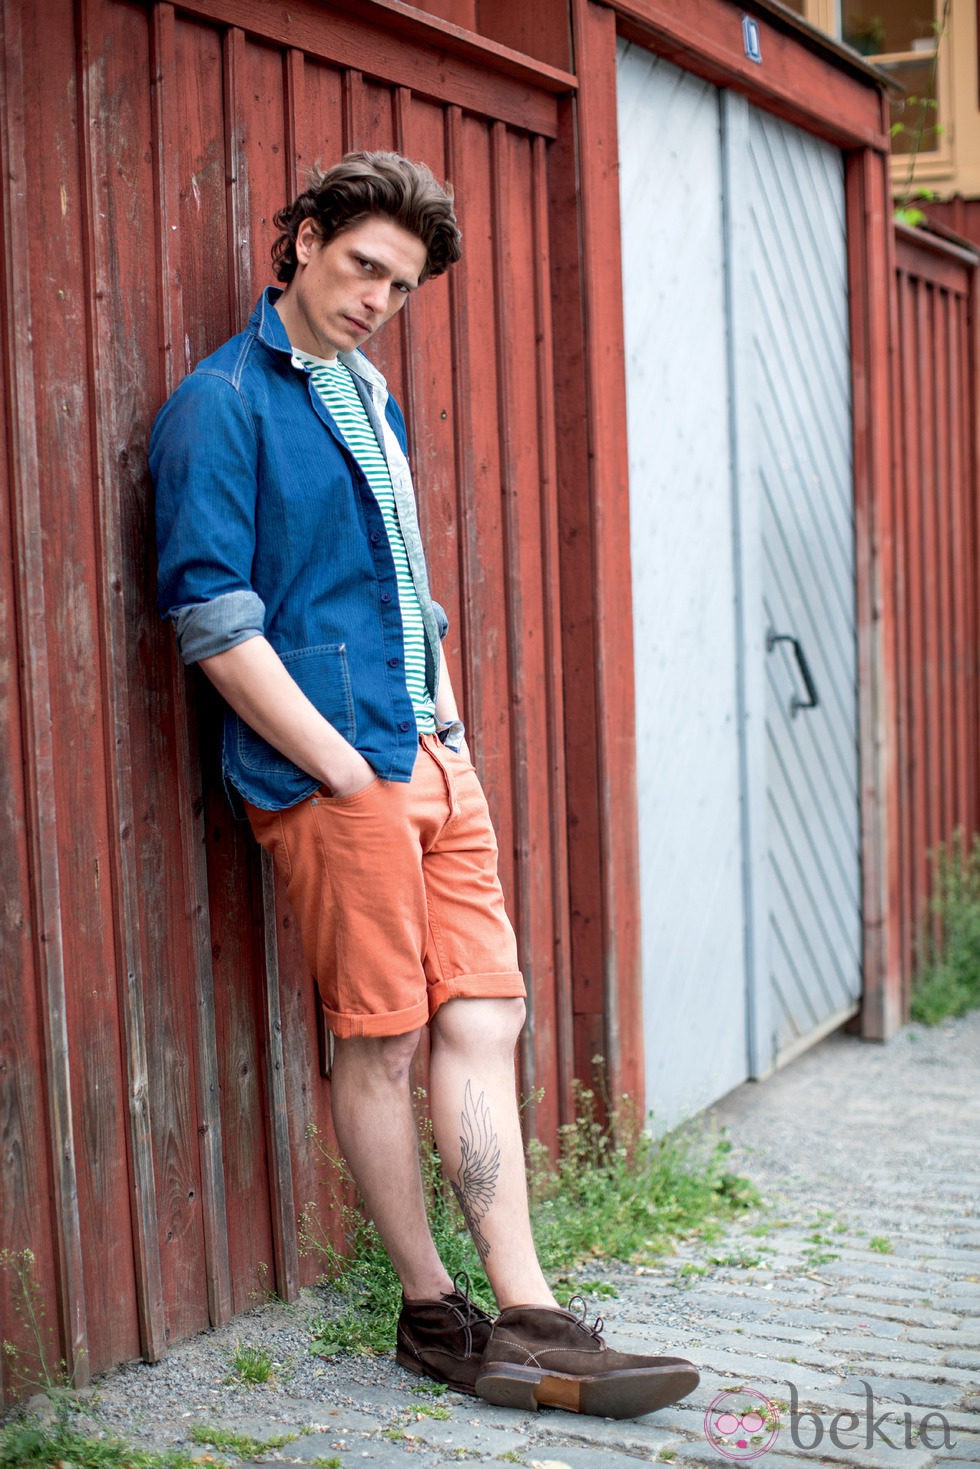 Pantalón pirata masculino de la colección primavera/verano 2013 de Lee